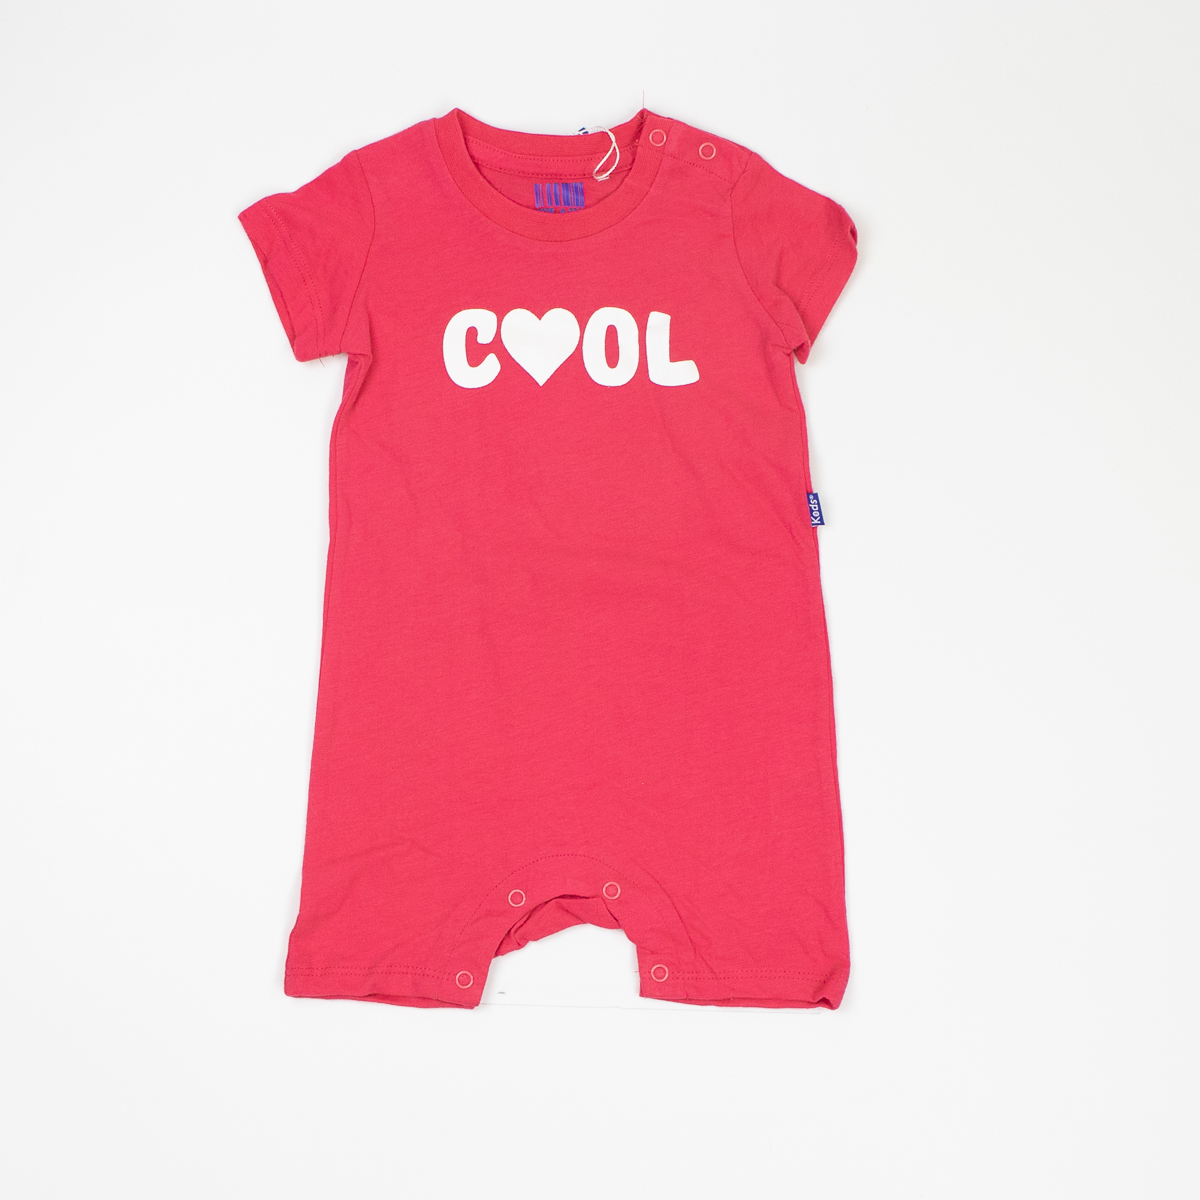 אוברול   שרוול קצר לתינוקות בנים בצבעים אדום בהיר ו שחור